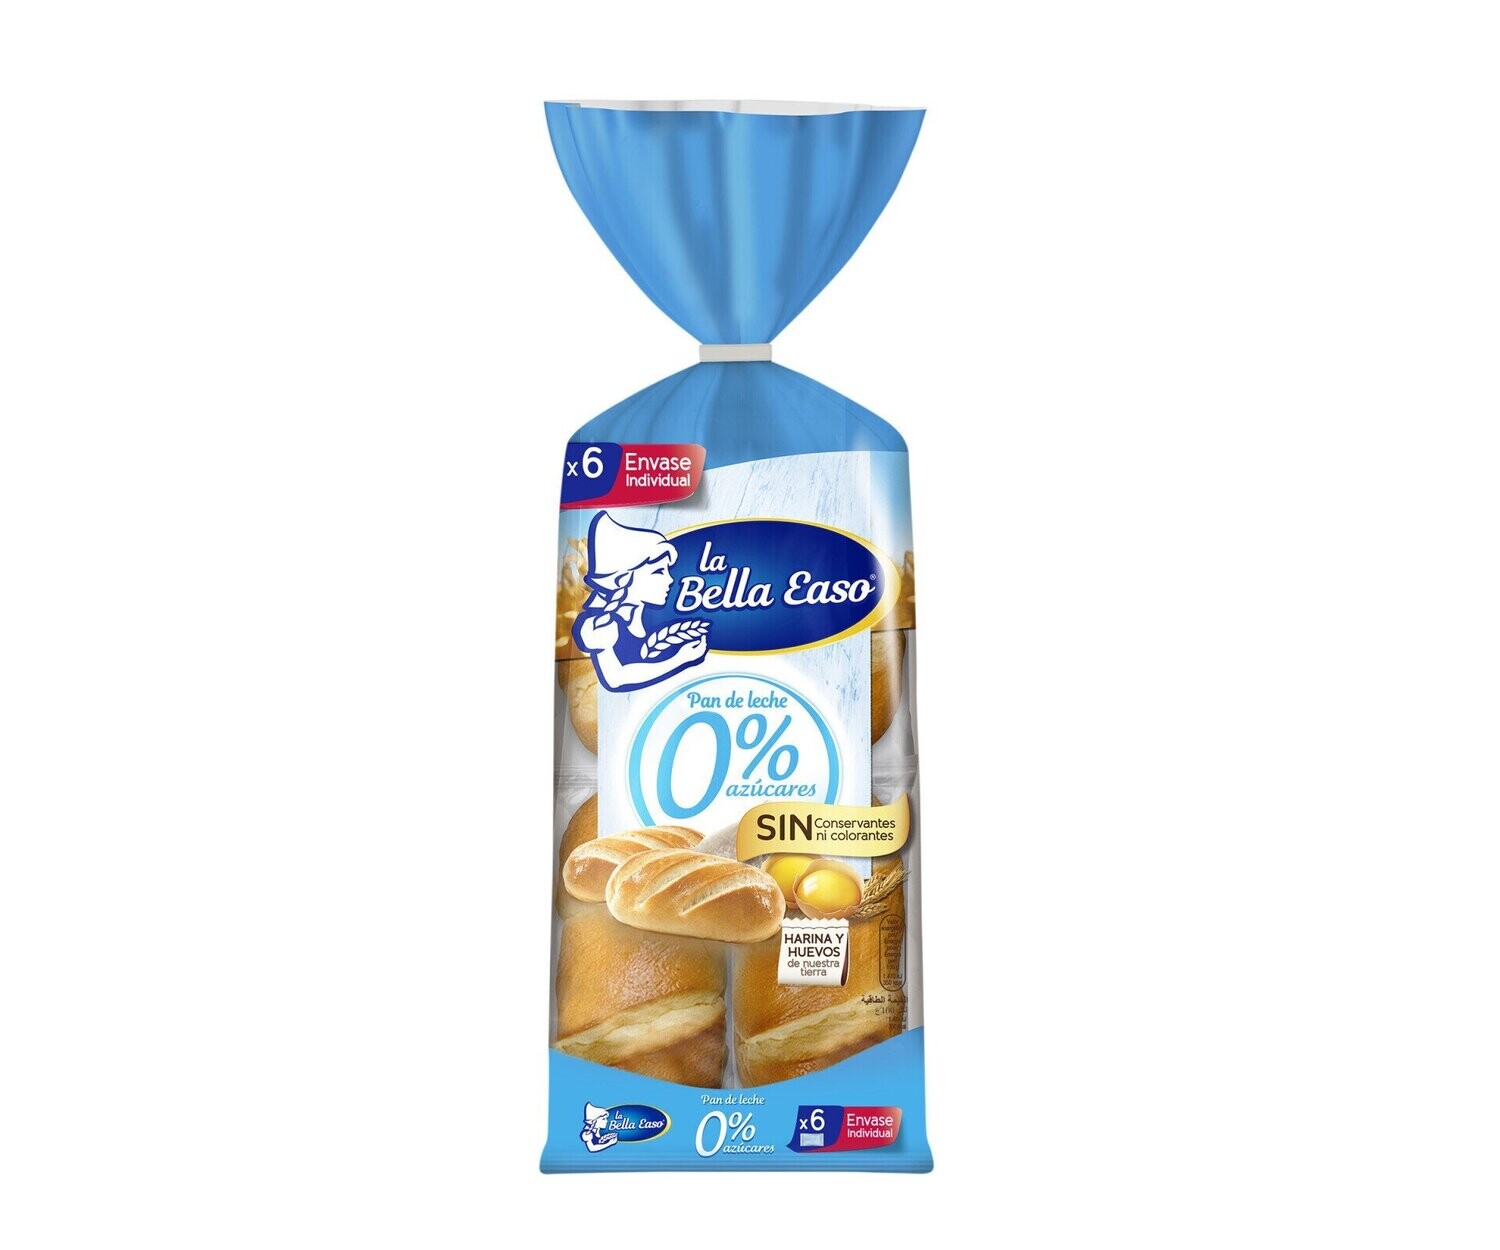 Pan de leche 0% azúcares añadidos LA BELLA EASO 6 uds. 210 g.